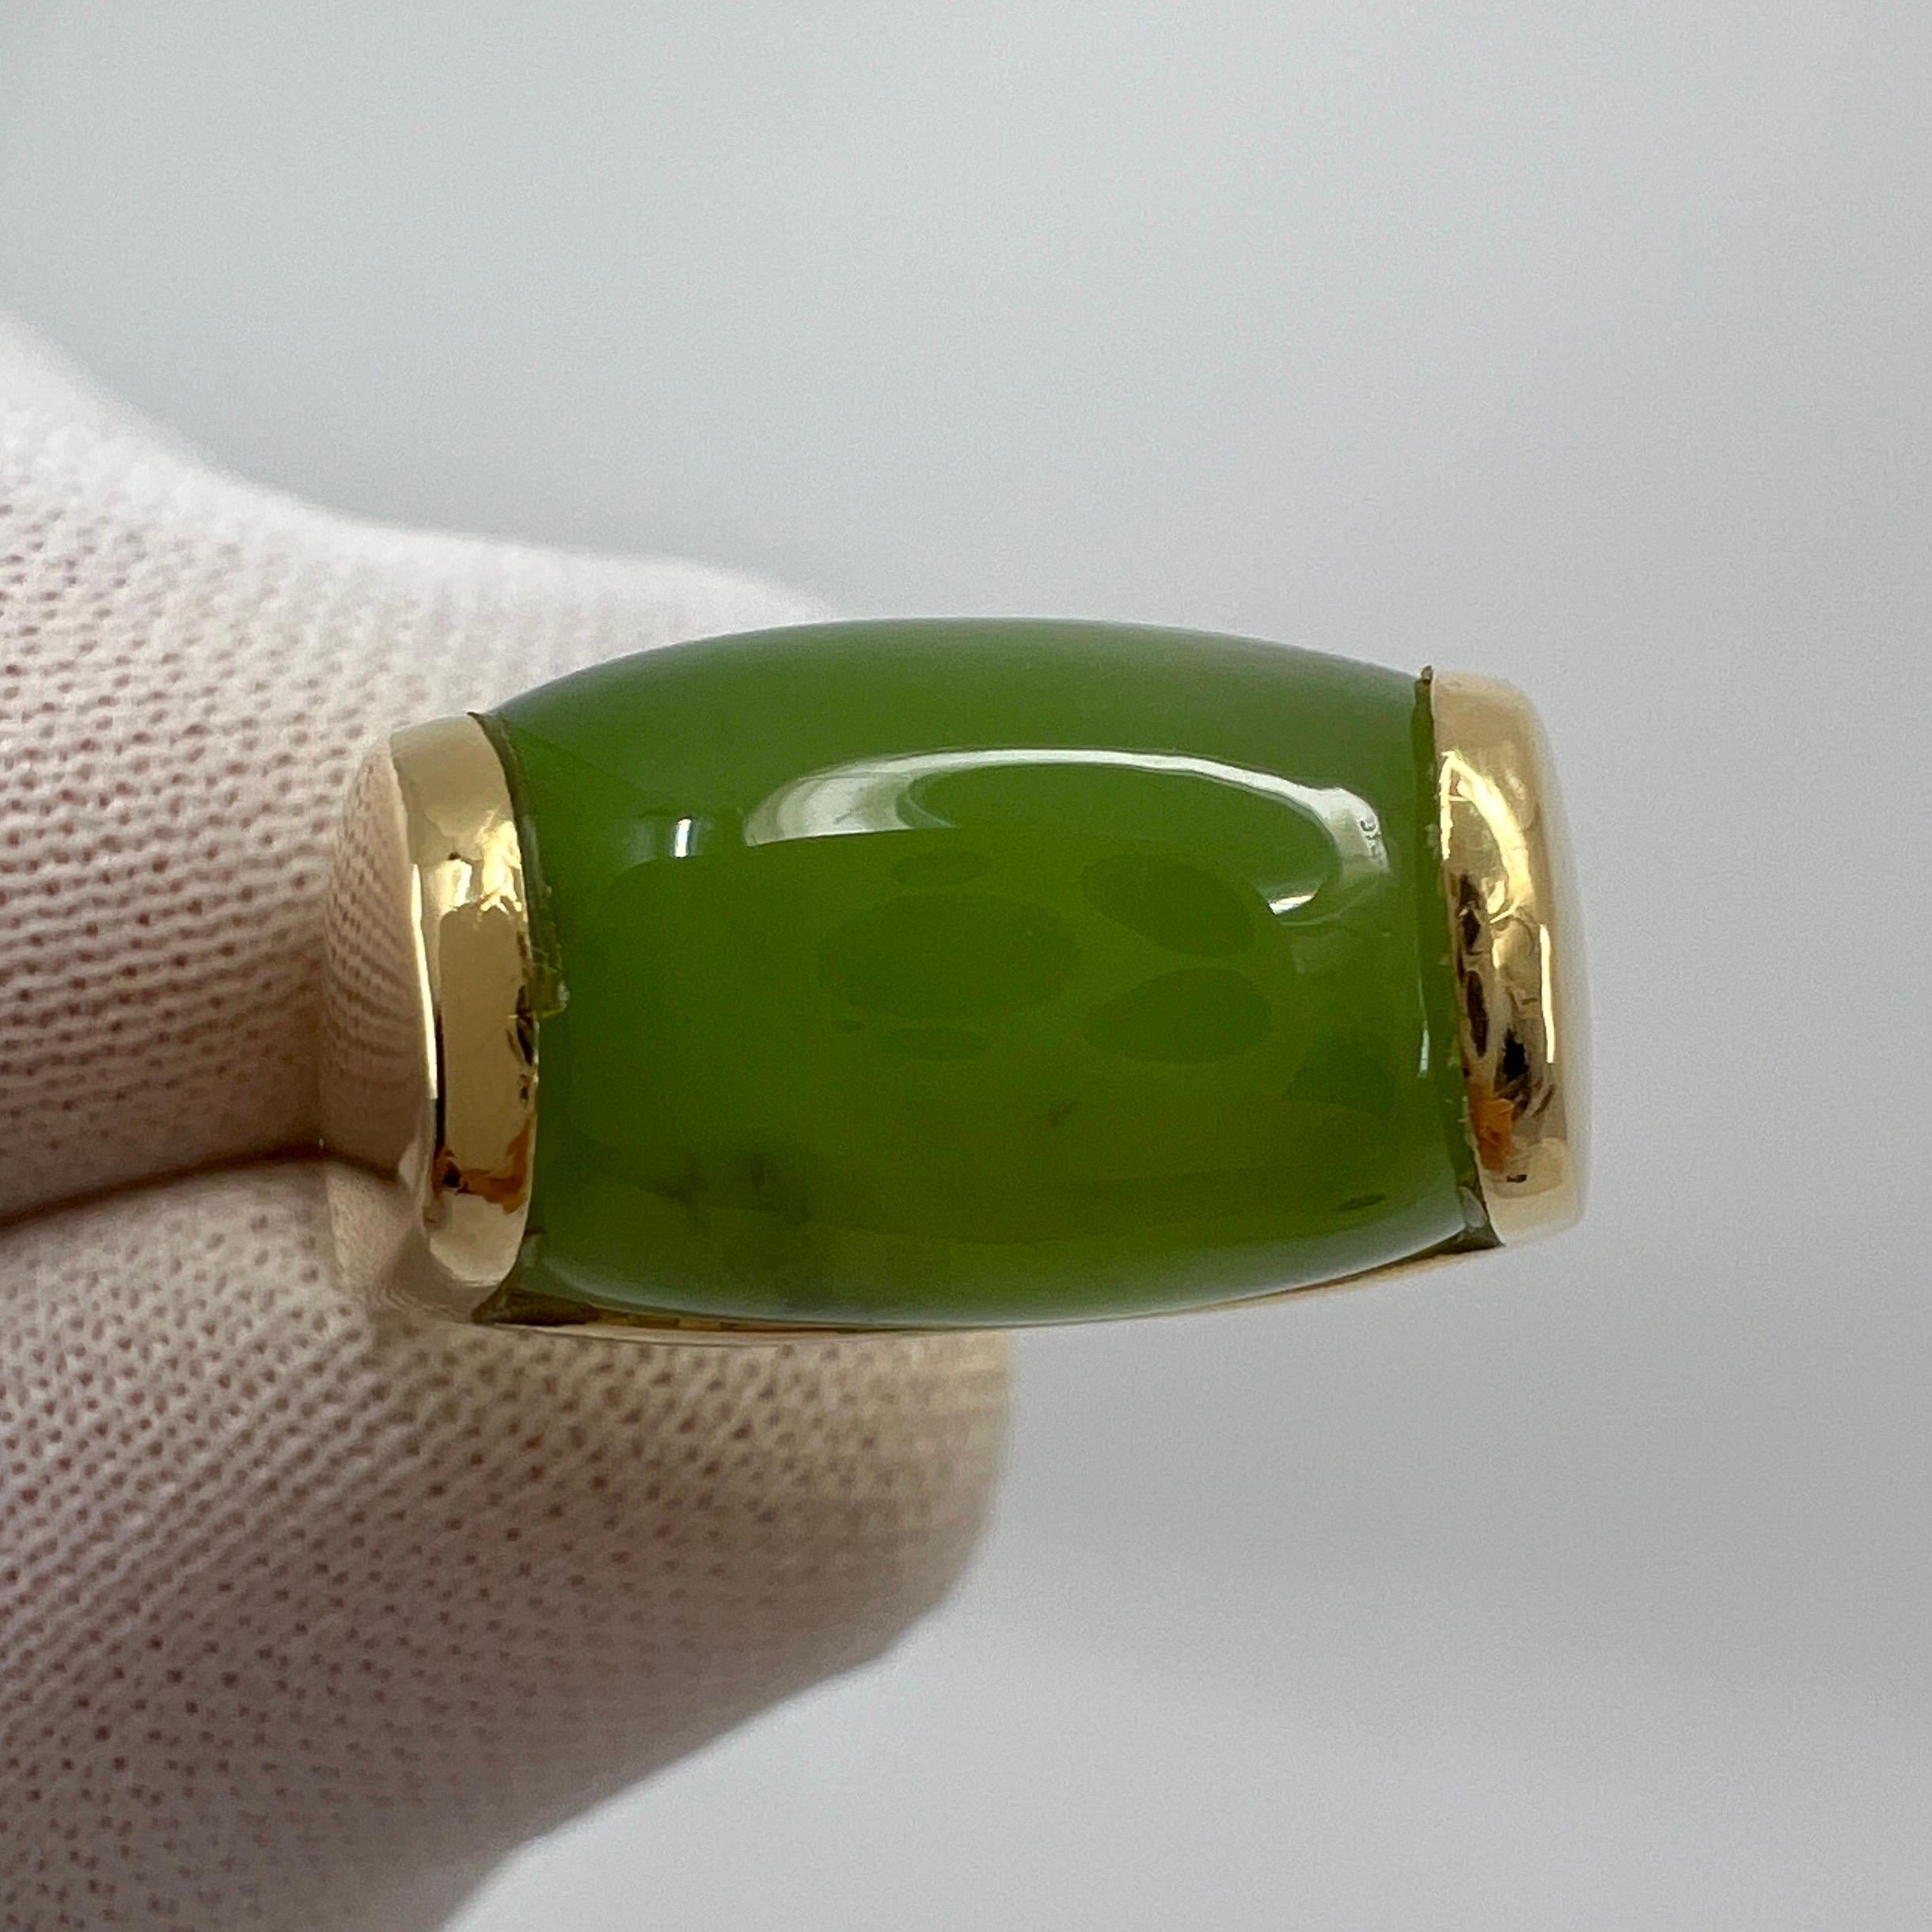 Rare Bvlgari Bulgari Green Jade Tronchetto 18 Karat Yellow Gold Ring with Box 5